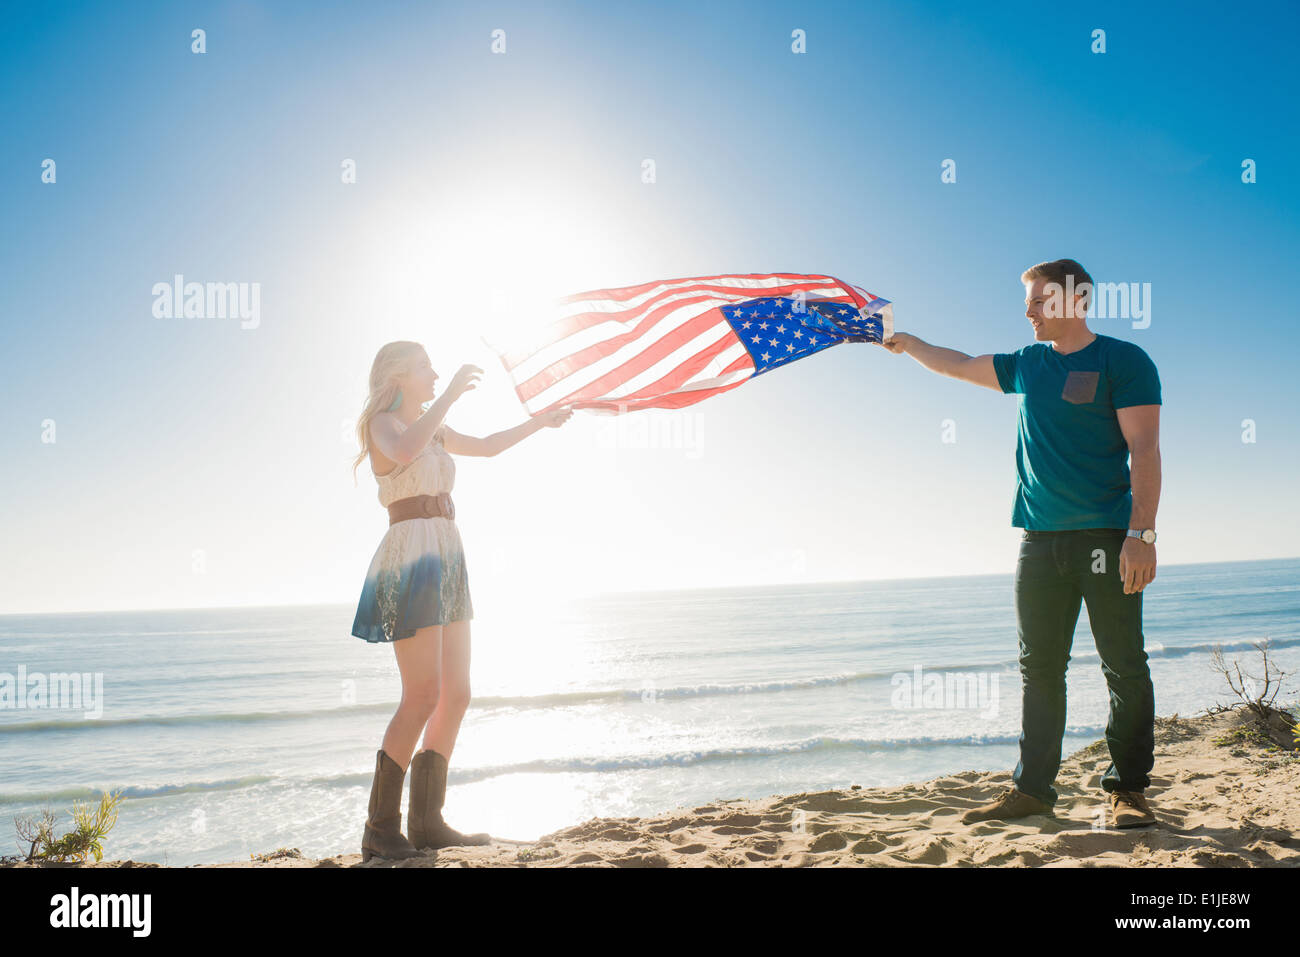 Jeune couple à l'autre holding up drapeau américain, Torrey Pines, San Diego, California, USA Banque D'Images